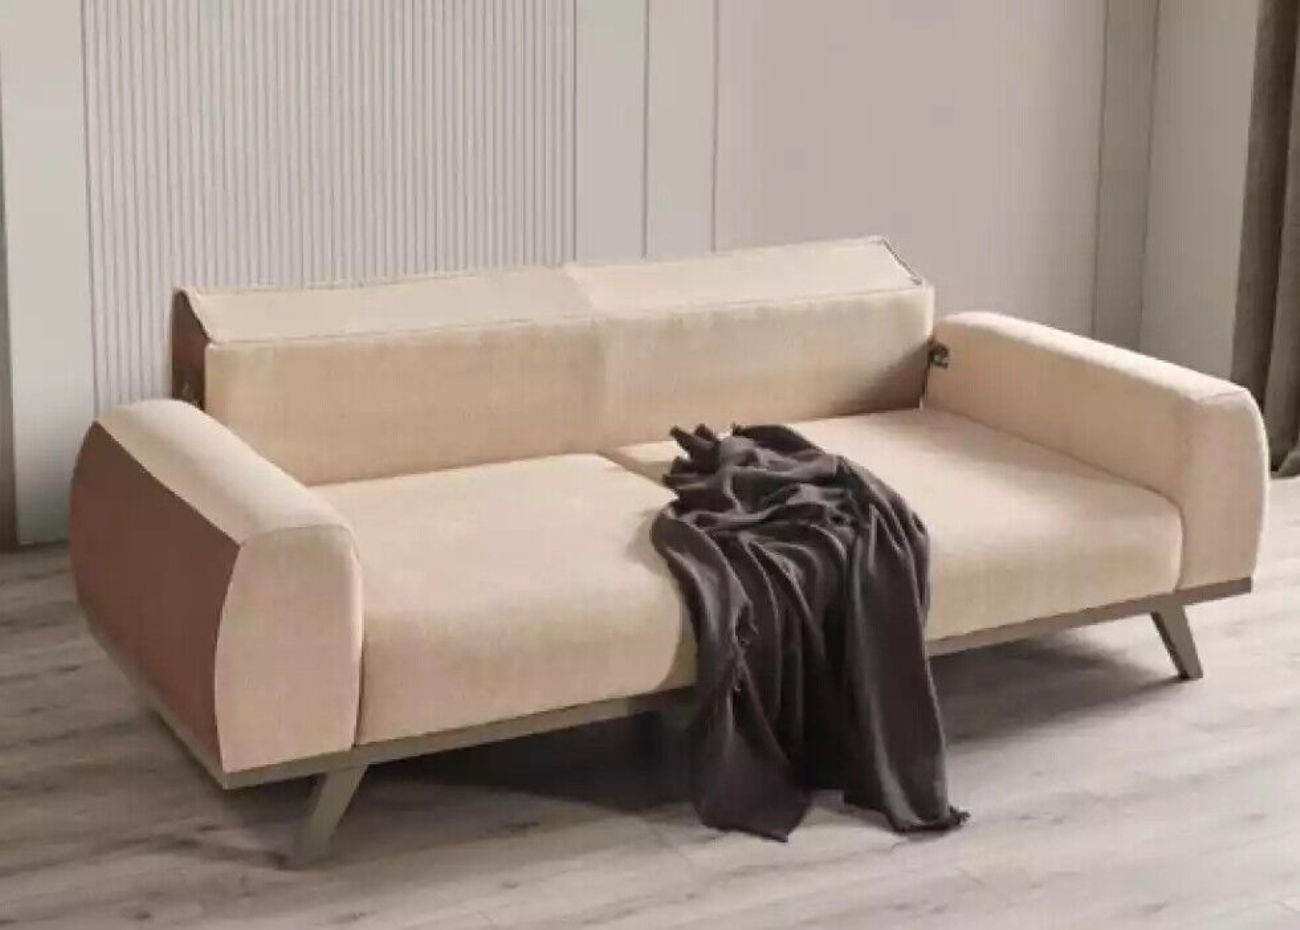 JVmoebel 3-Sitzer Dreisitzer Stoffsofas Sofa 3 Sitzer Beige Luxus Couchen Stoff Couch, 1 Teile, Made in Italy